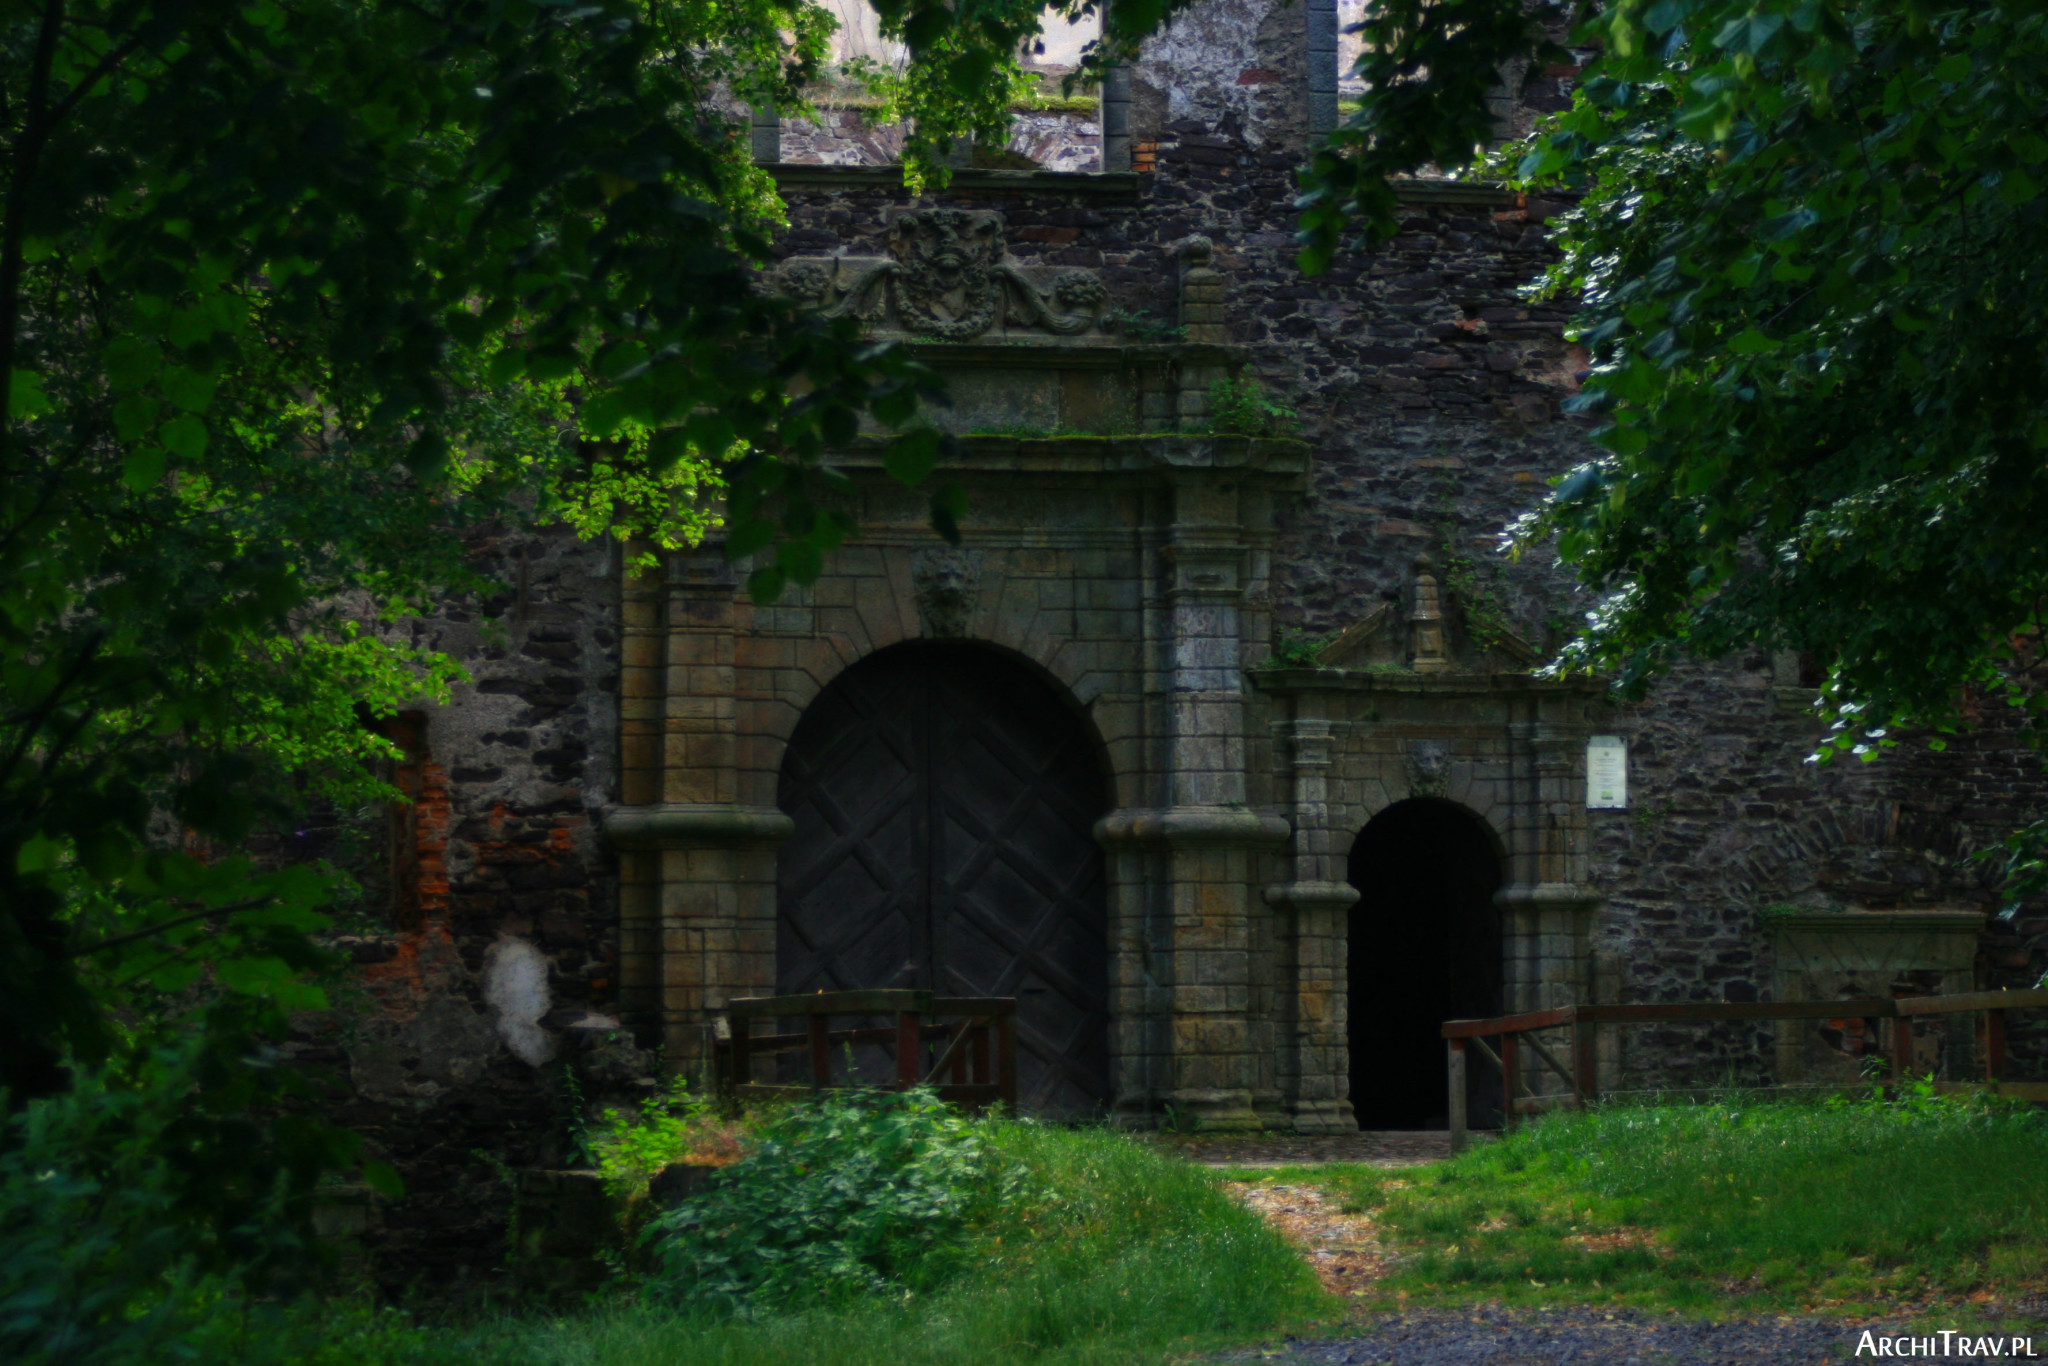 dwie bramy, jedna duża, druga mniejsza - wejście do zamku w Świnach